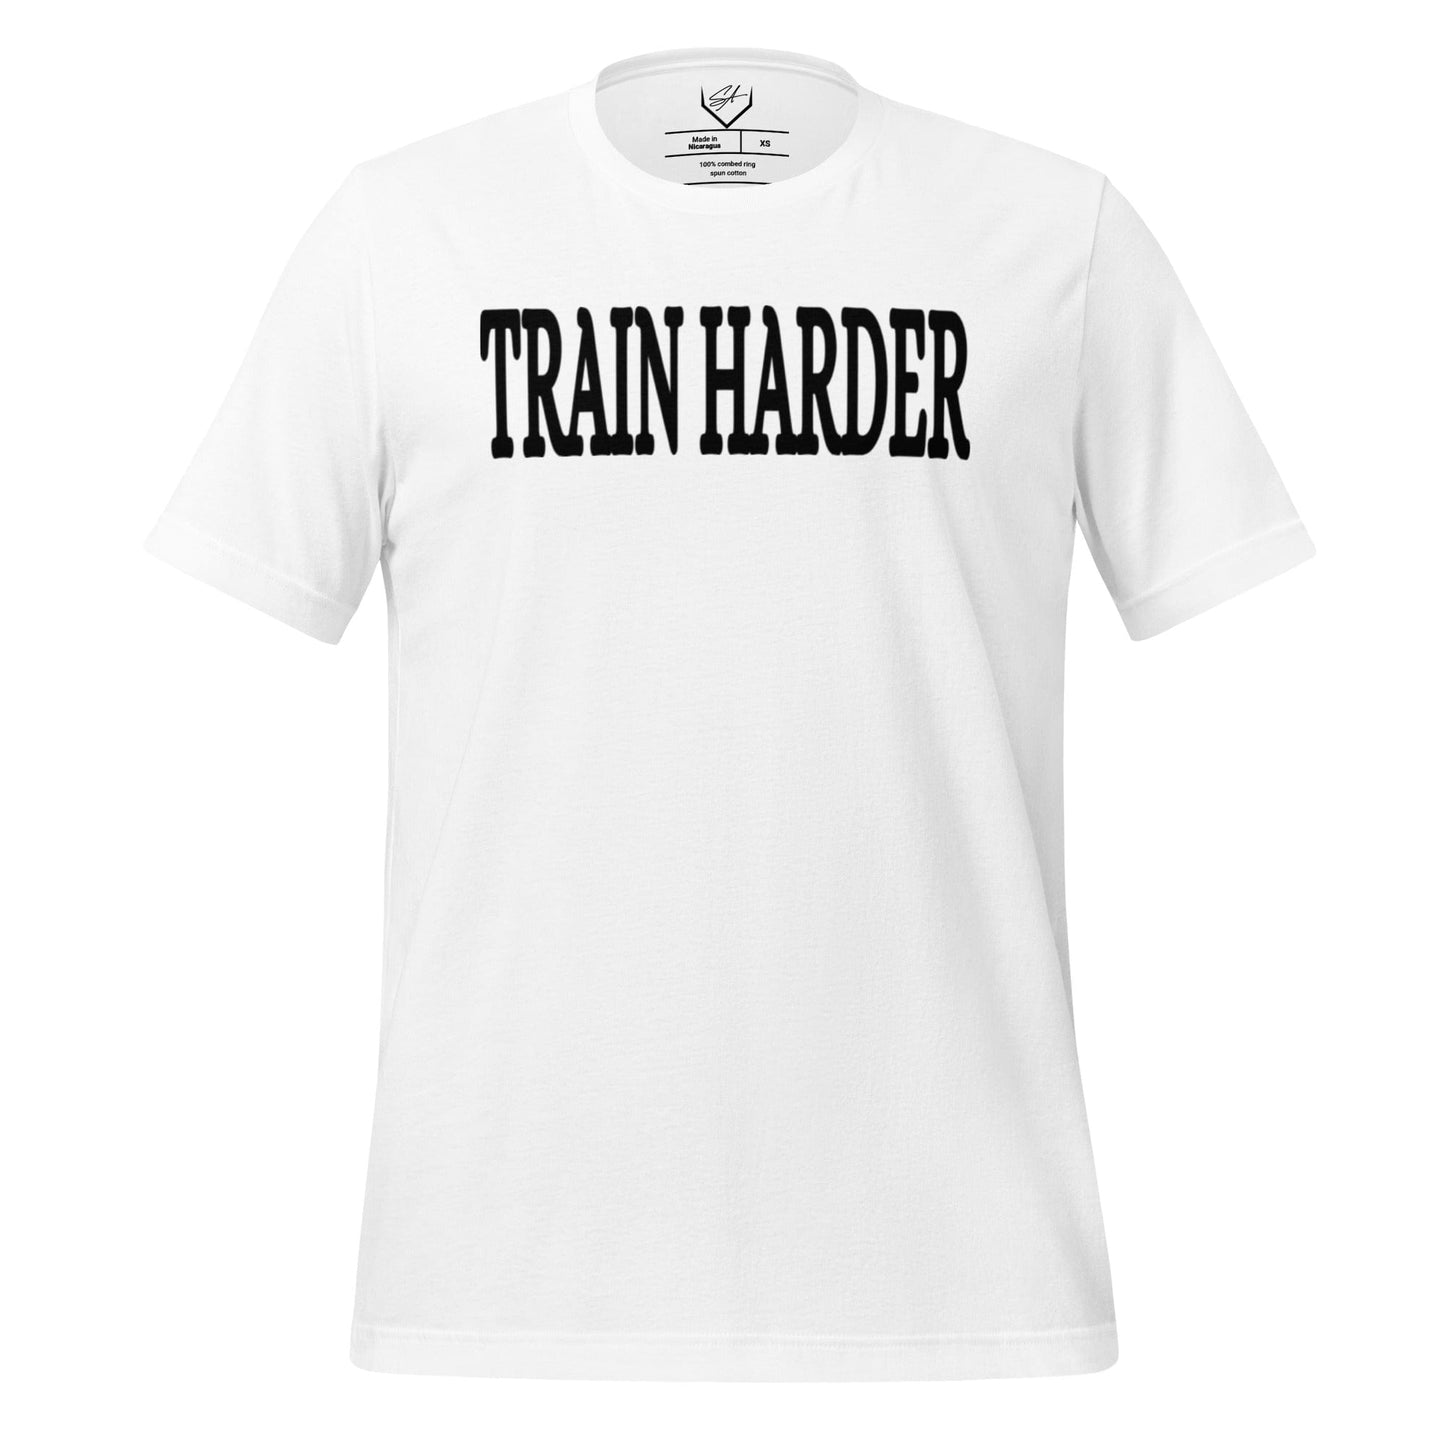 Train Harder - Adult Tee